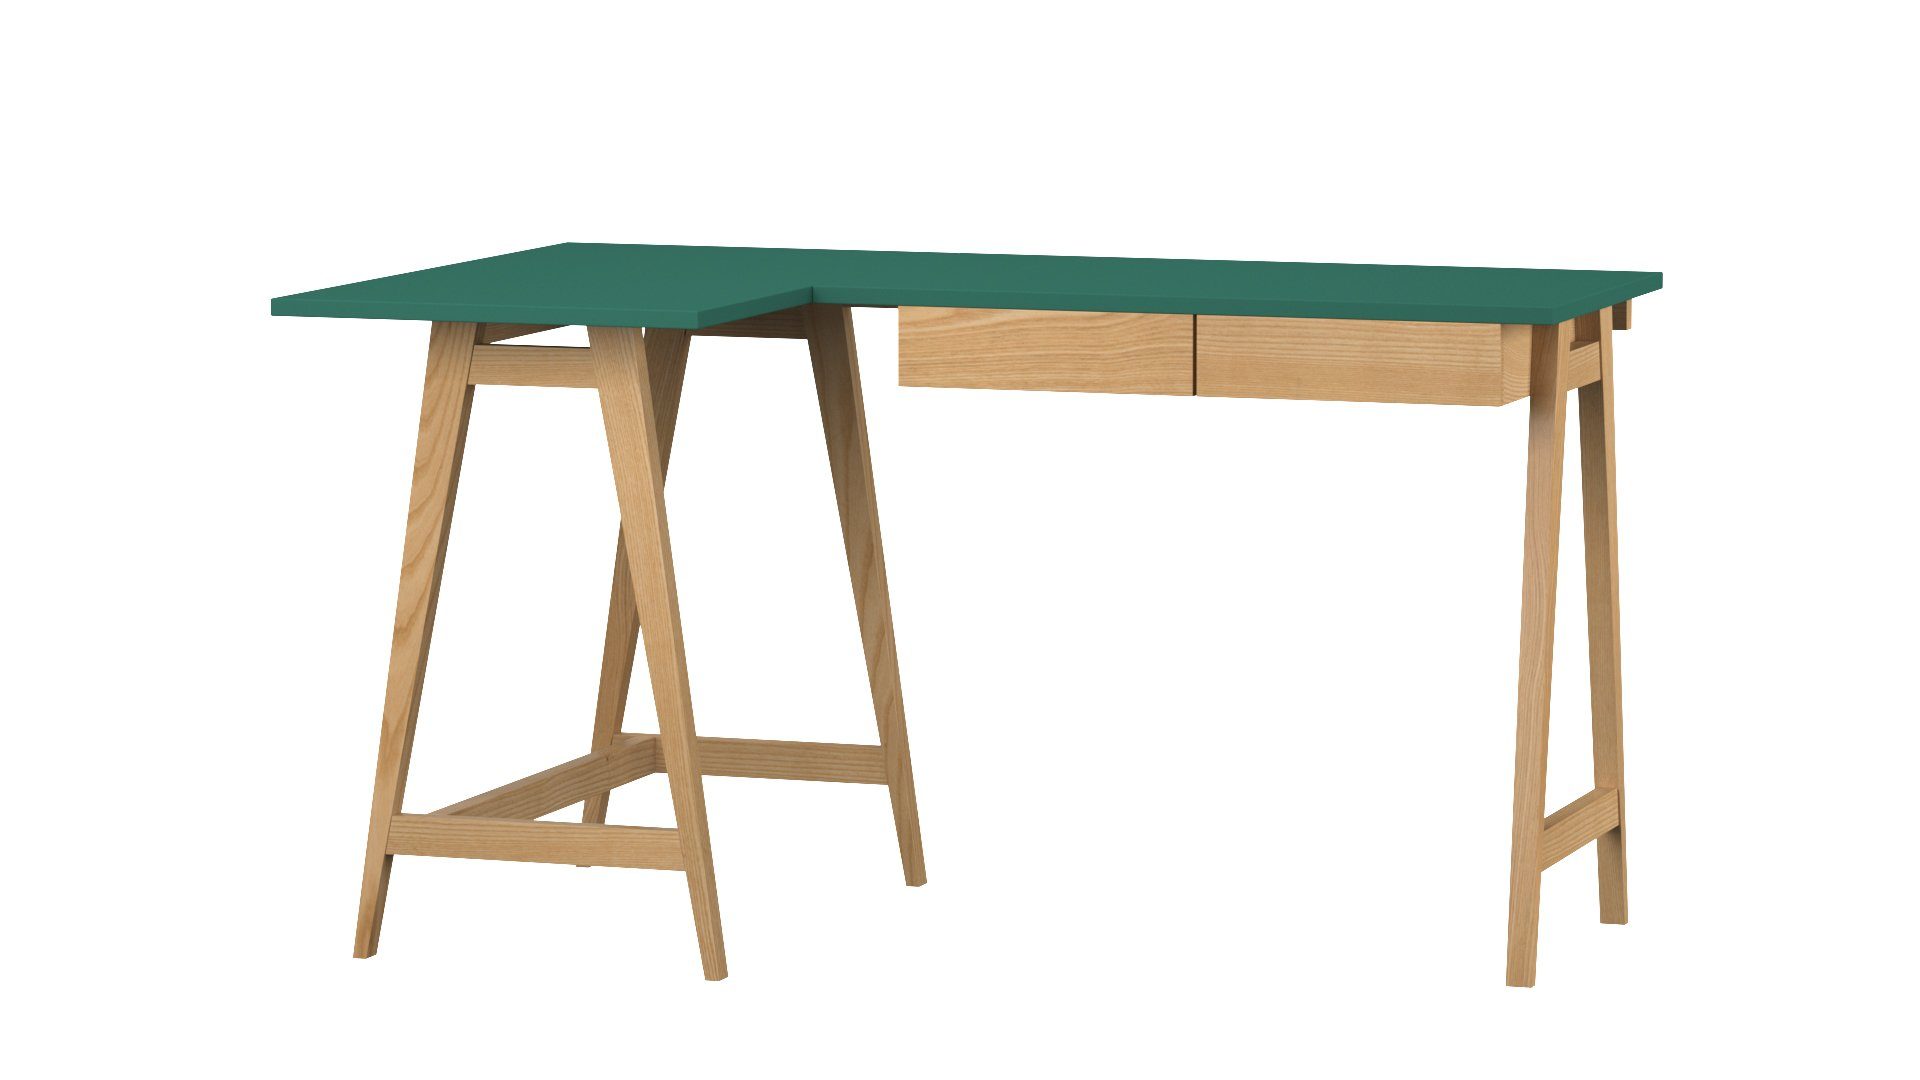 Katia - Kinderzimmer Schubladen) - - - Eschenholz (Eckschreibtisch Schreibtisch Katia - Design Eckschreibtisch - Jugendzimmer Schubladen minimalistisches mit Grün Siblo Moderner Schreibtisch MDF-Platte mit